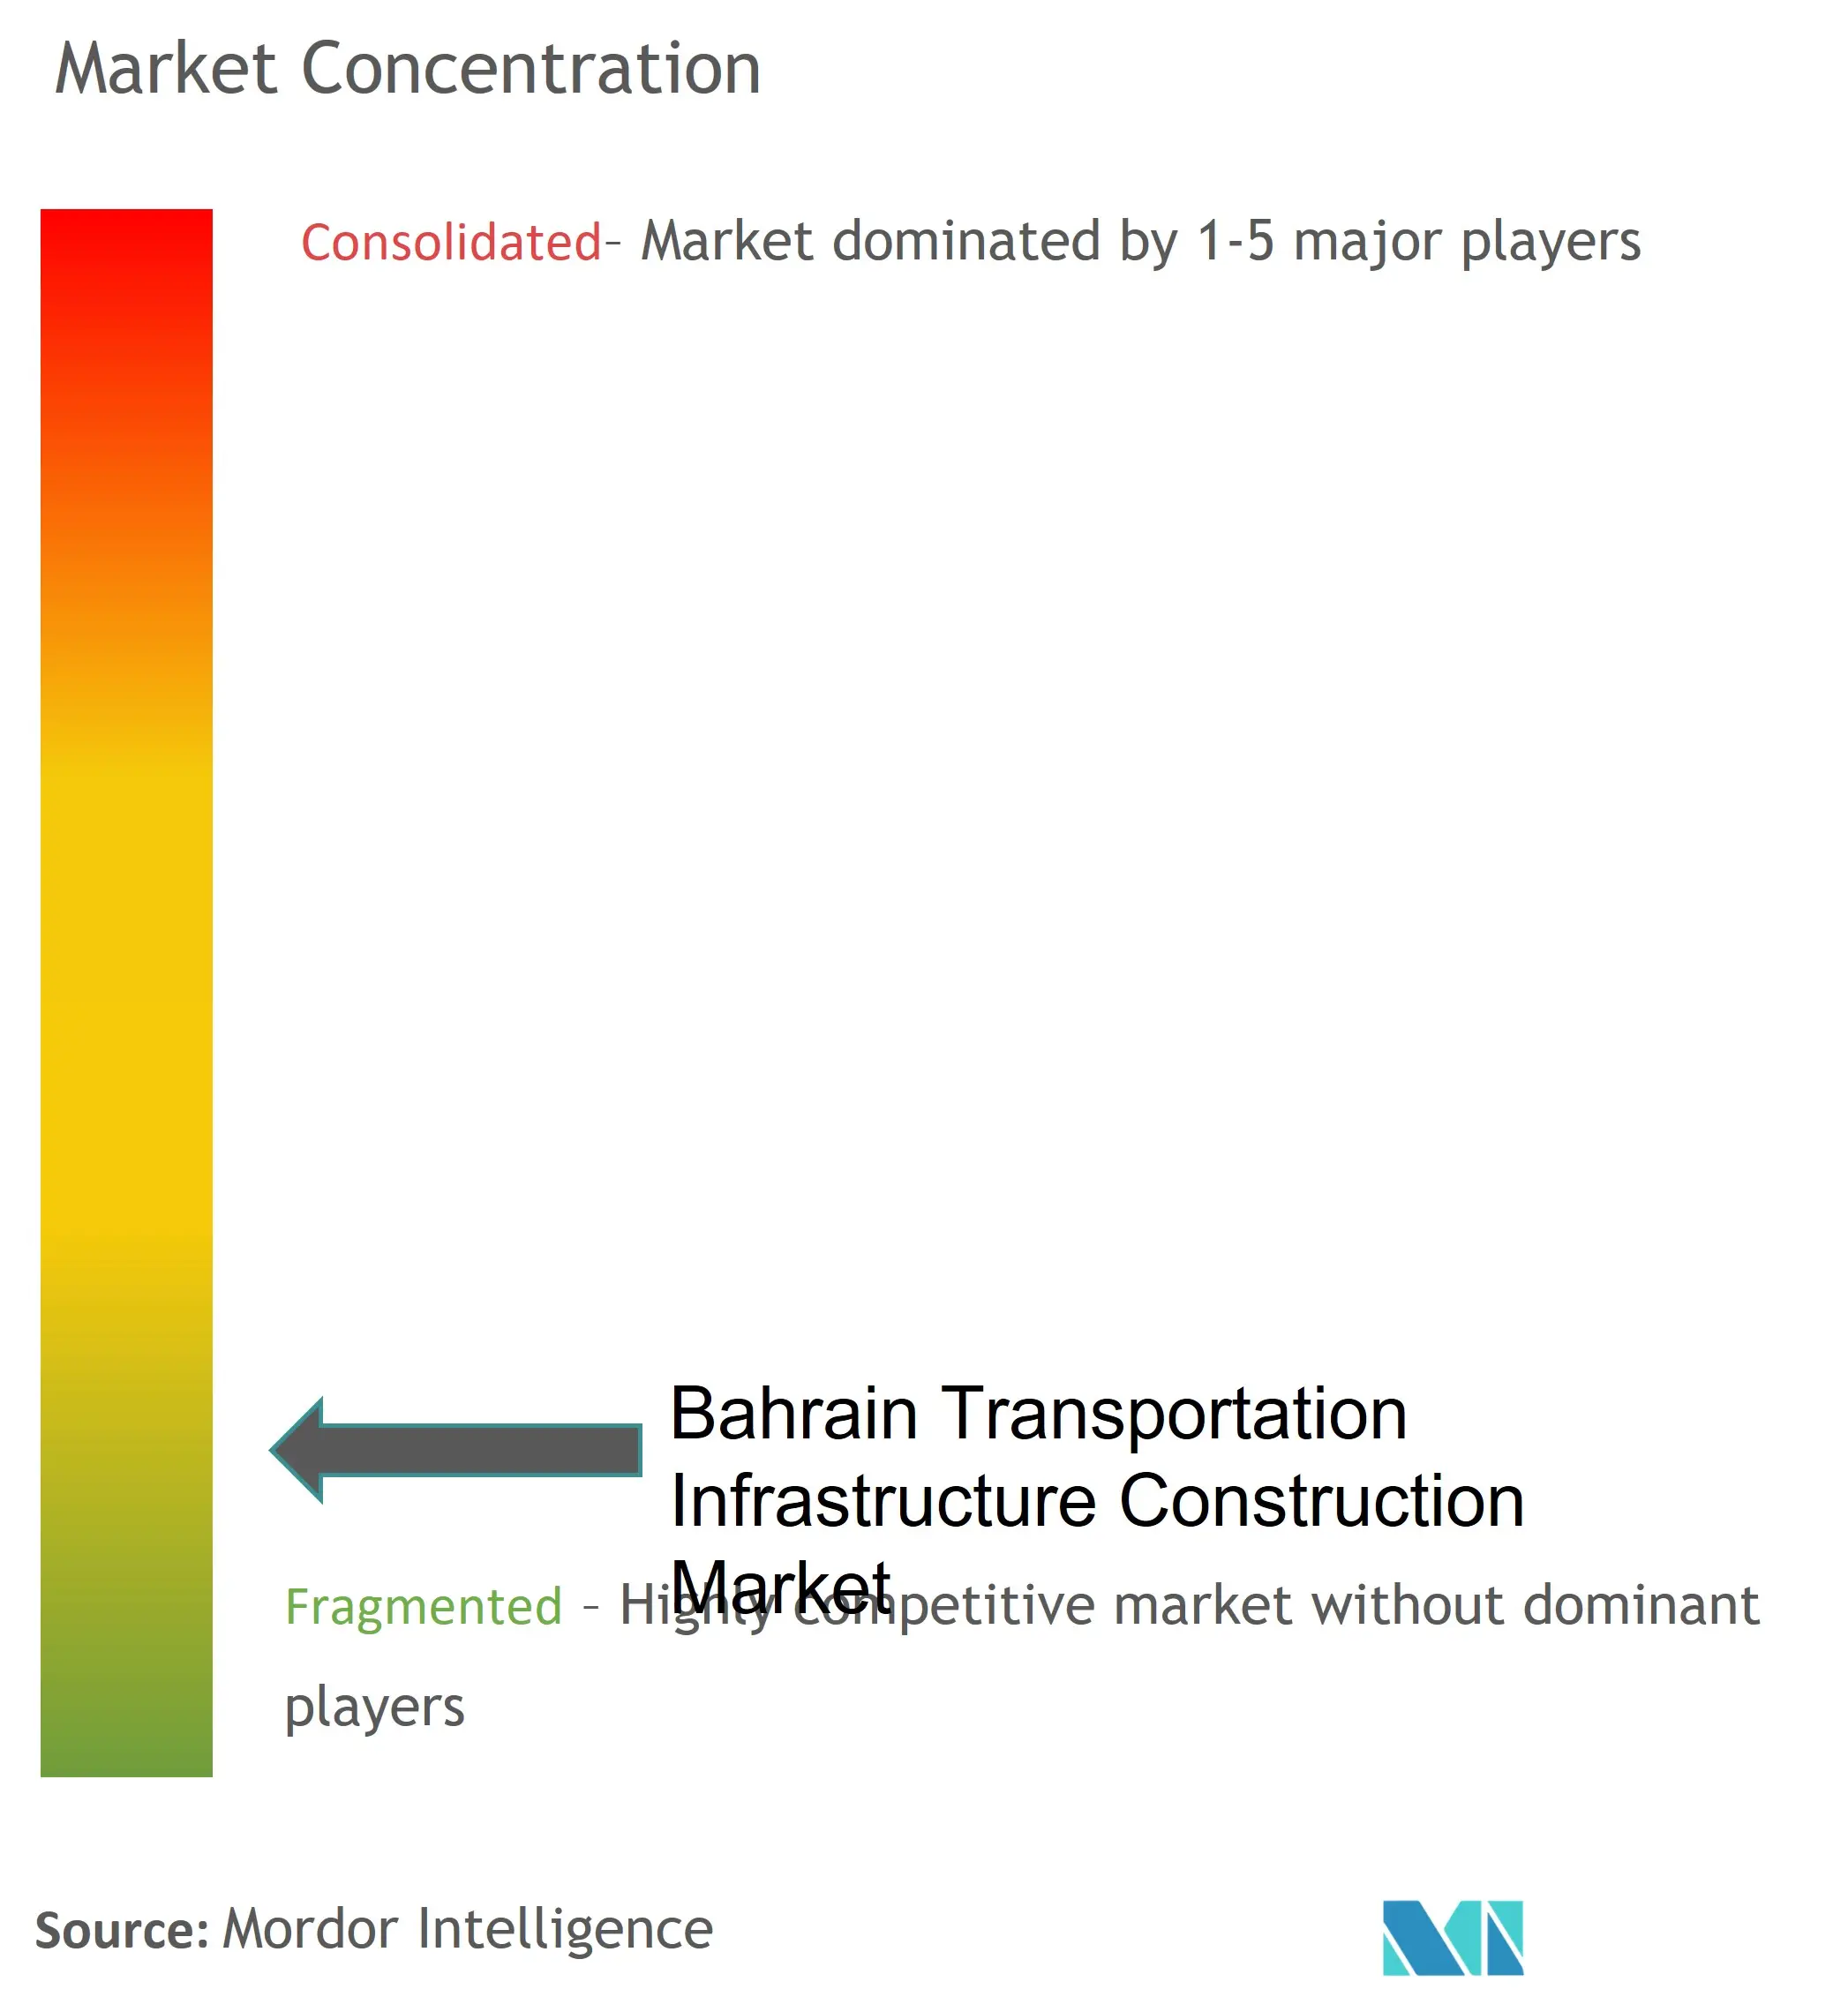 Концентрация рынка строительства транспортной инфраструктуры Бахрейна